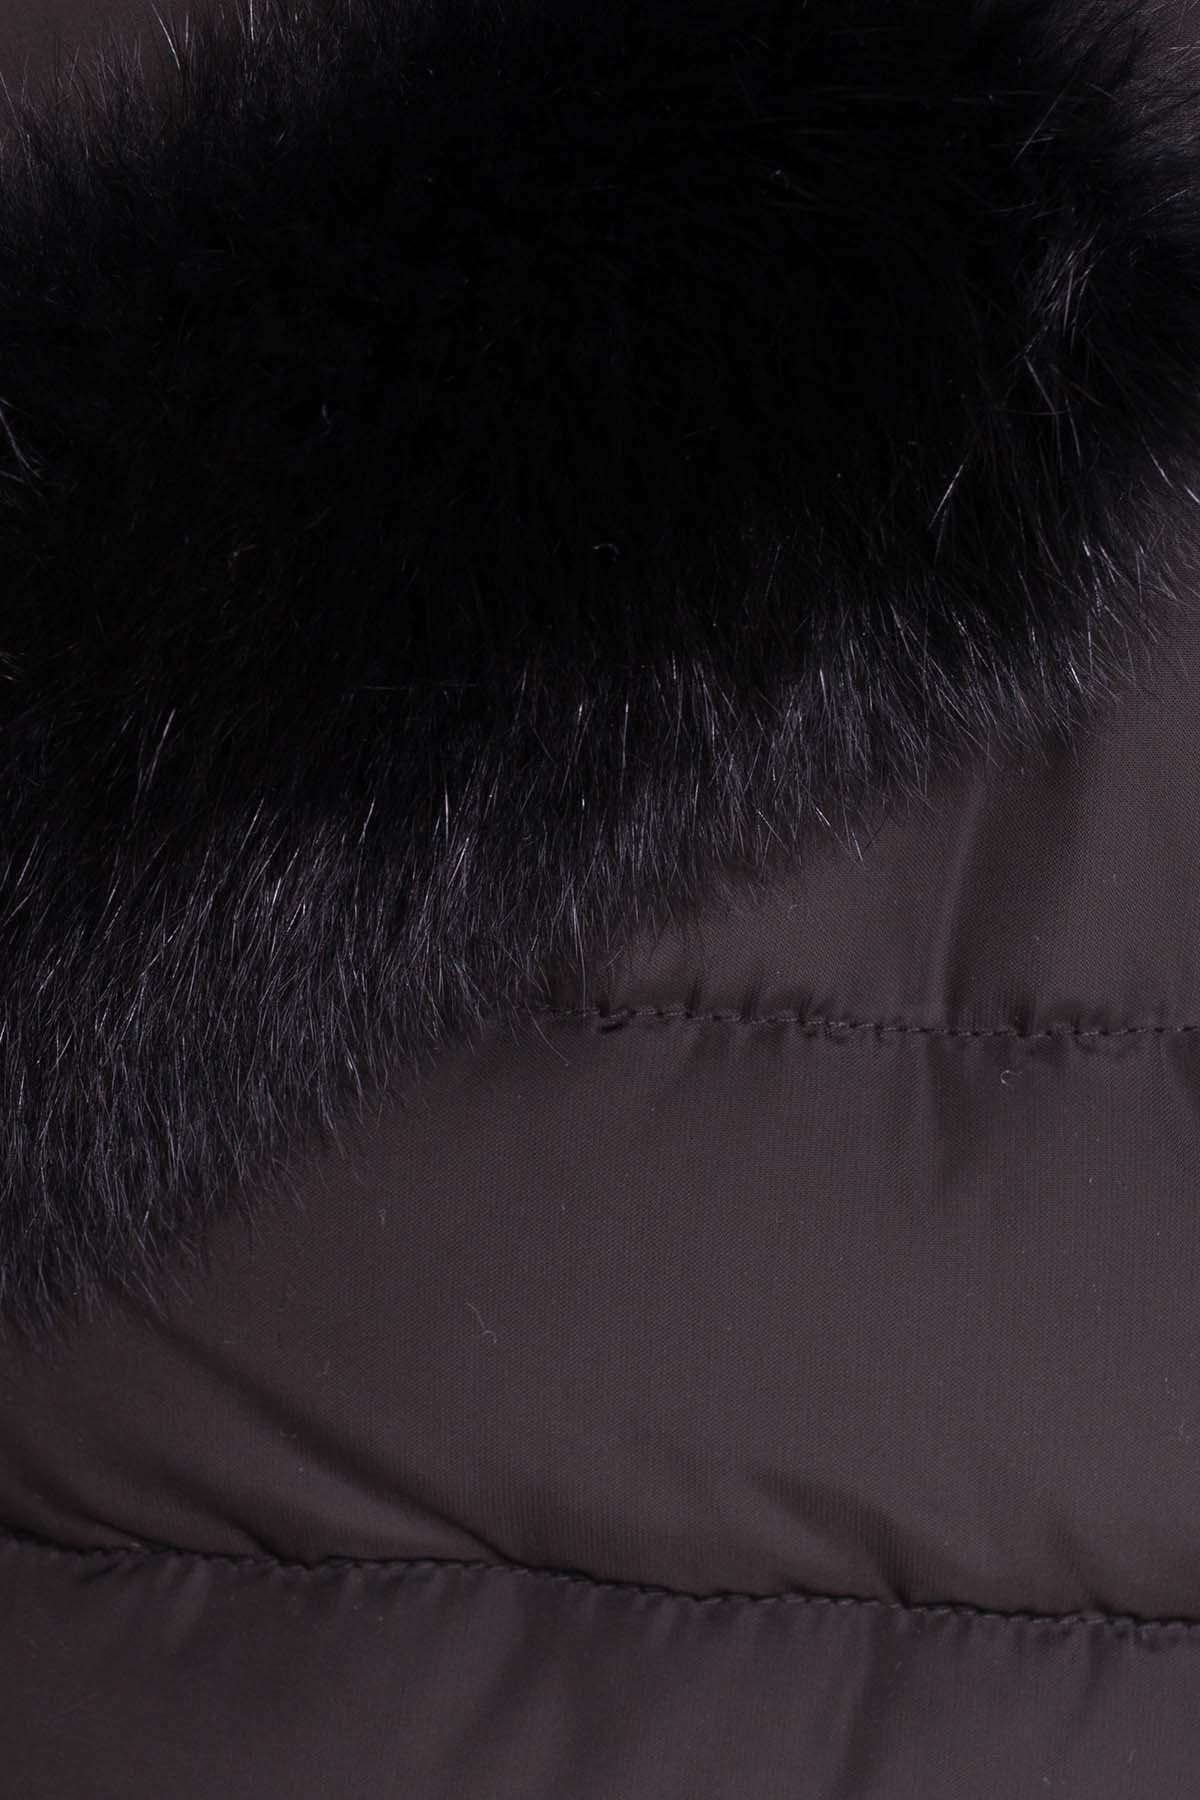 Стильный стеганый пуховик с мехом на карманах Кассия 8410 АРТ. 44653 Цвет: Черный - фото 5, интернет магазин tm-modus.ru